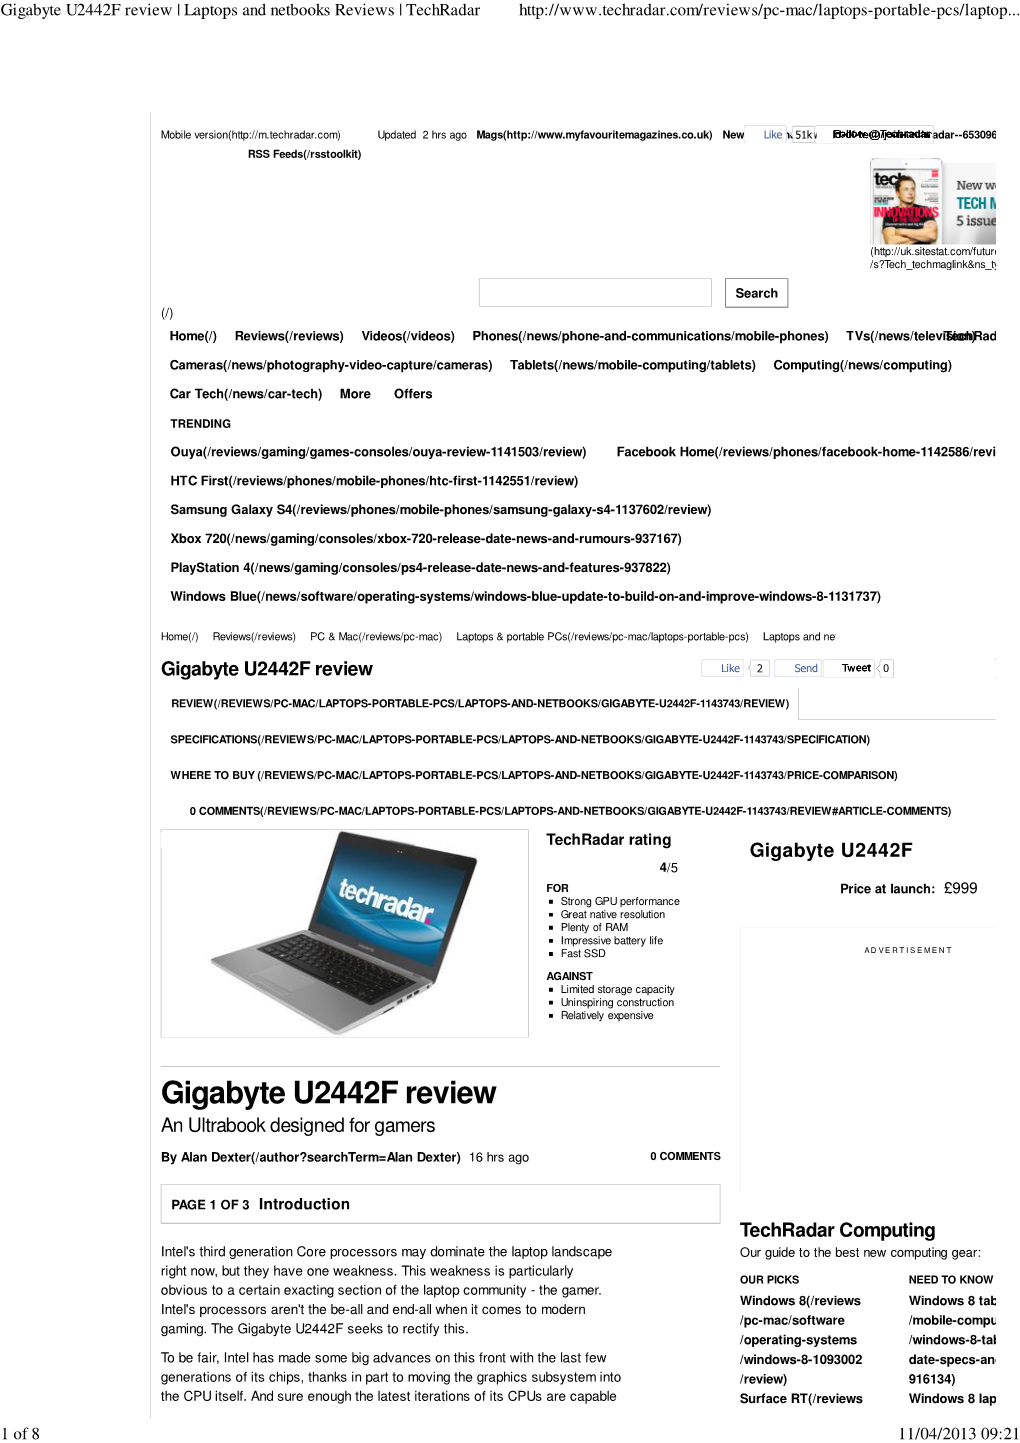 Gigabyte U2442F Review | Laptops and Netbooks Reviews | Techradar